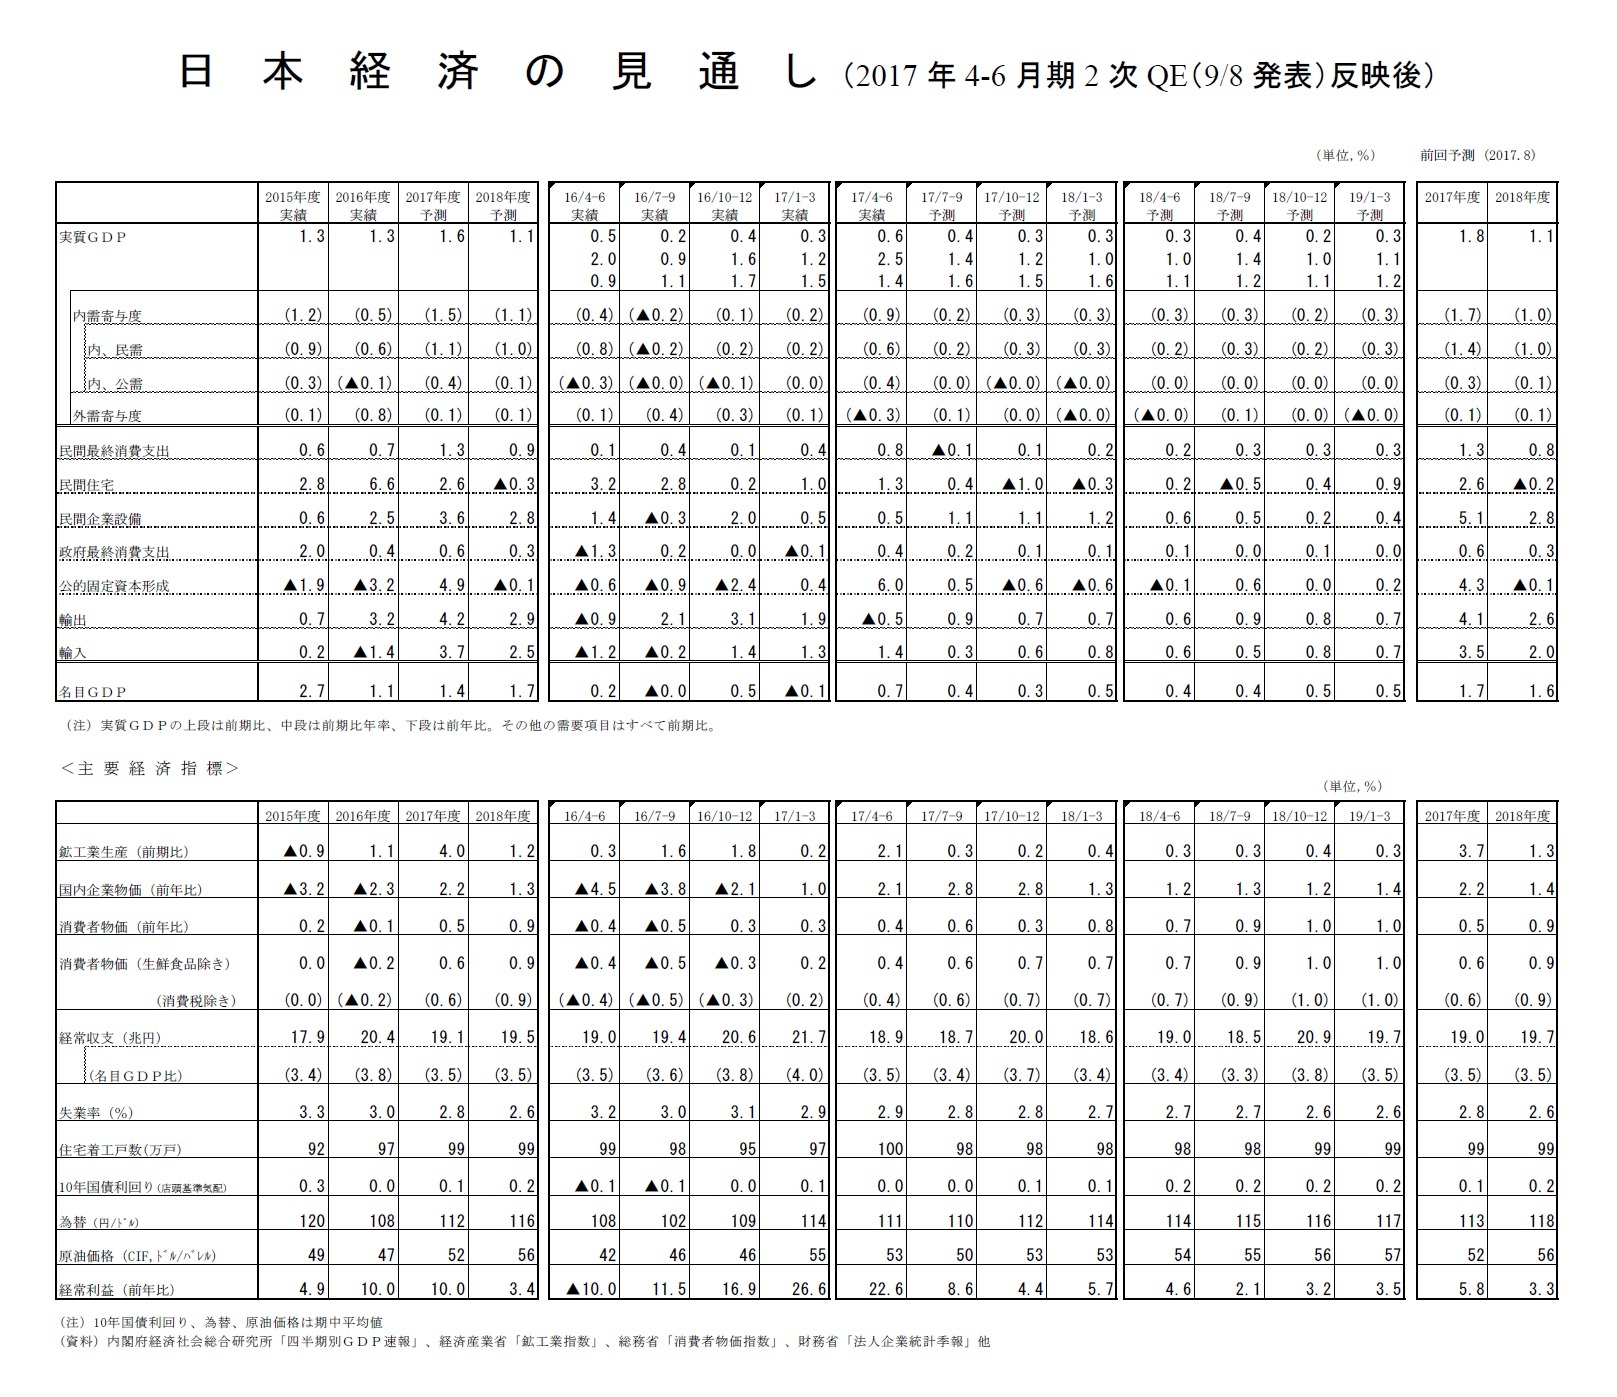 日本経済の見通し（2017年4-6月期2次QE（9/8発表）反映後）